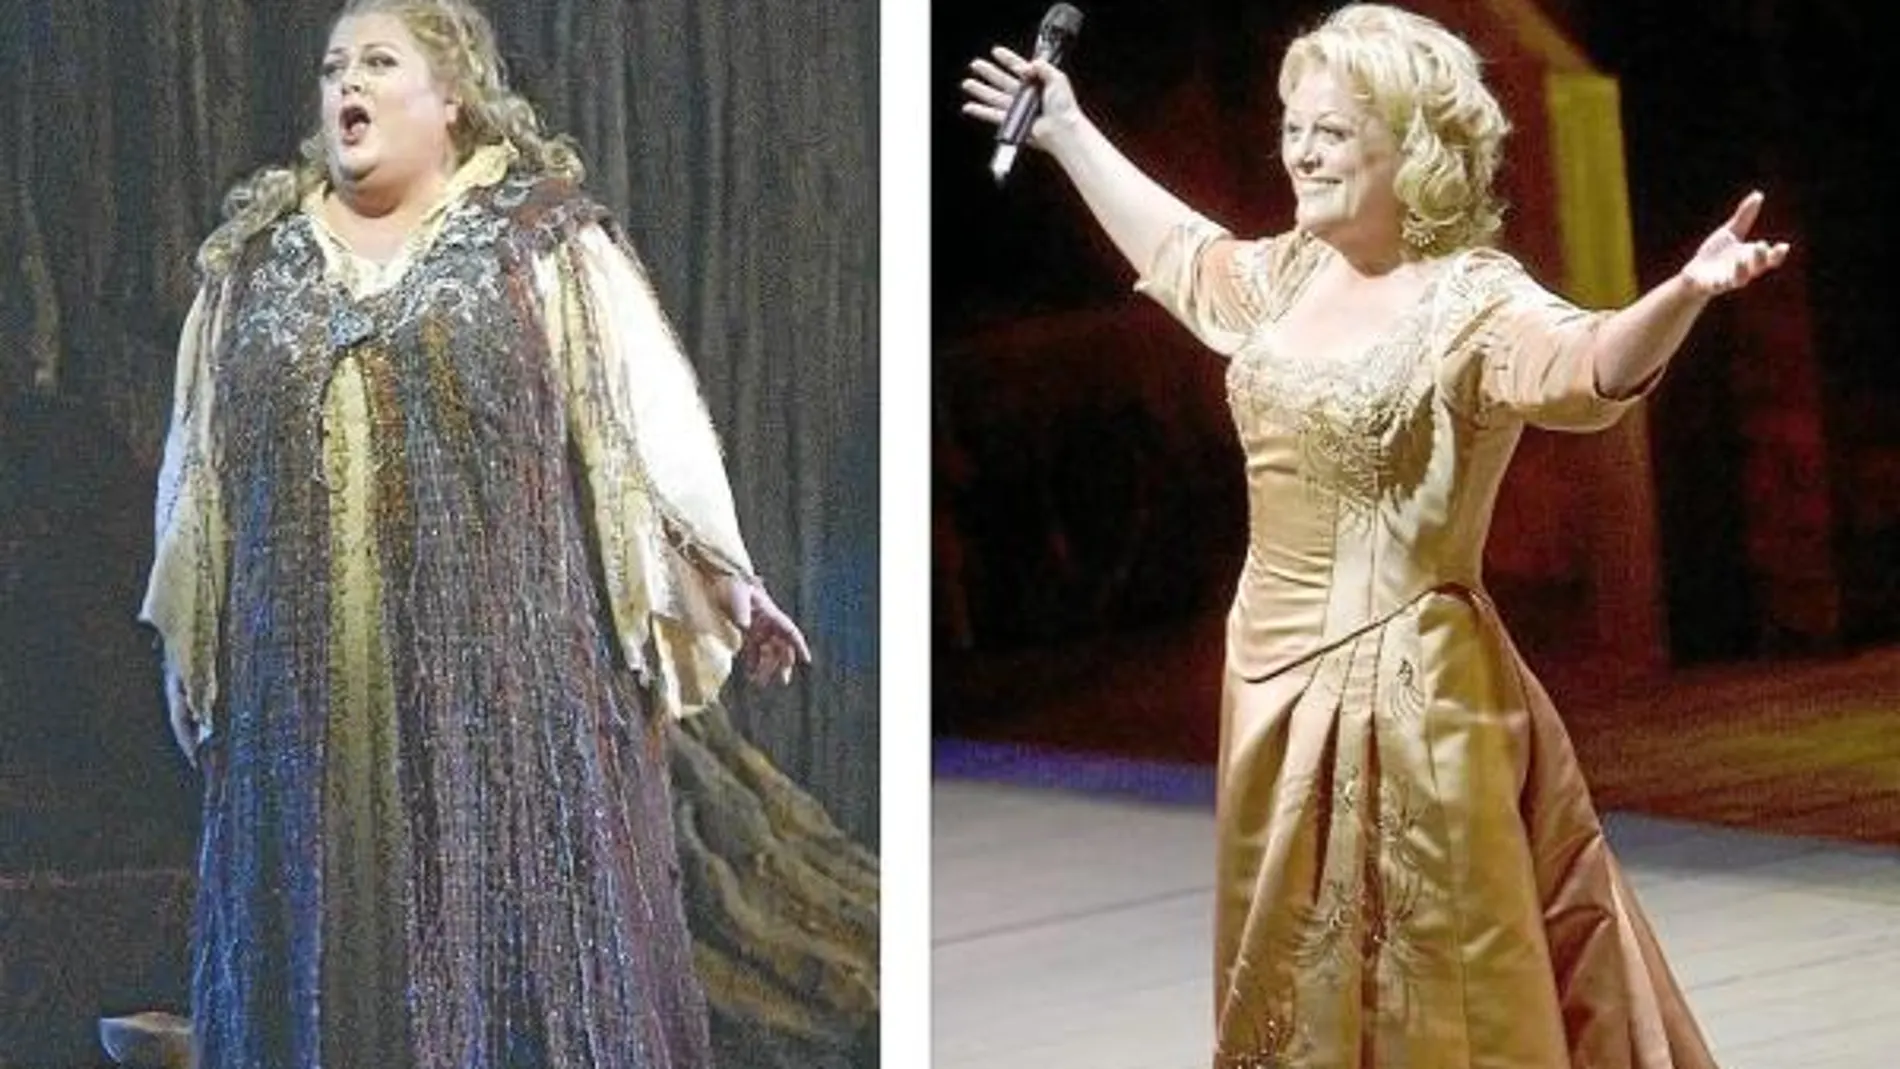 Deborah Voight (en la image, el antes y el después) perdió 61 kilos tras ser rechazada para una «Aridana en Naxos» en la Royal Opera House.